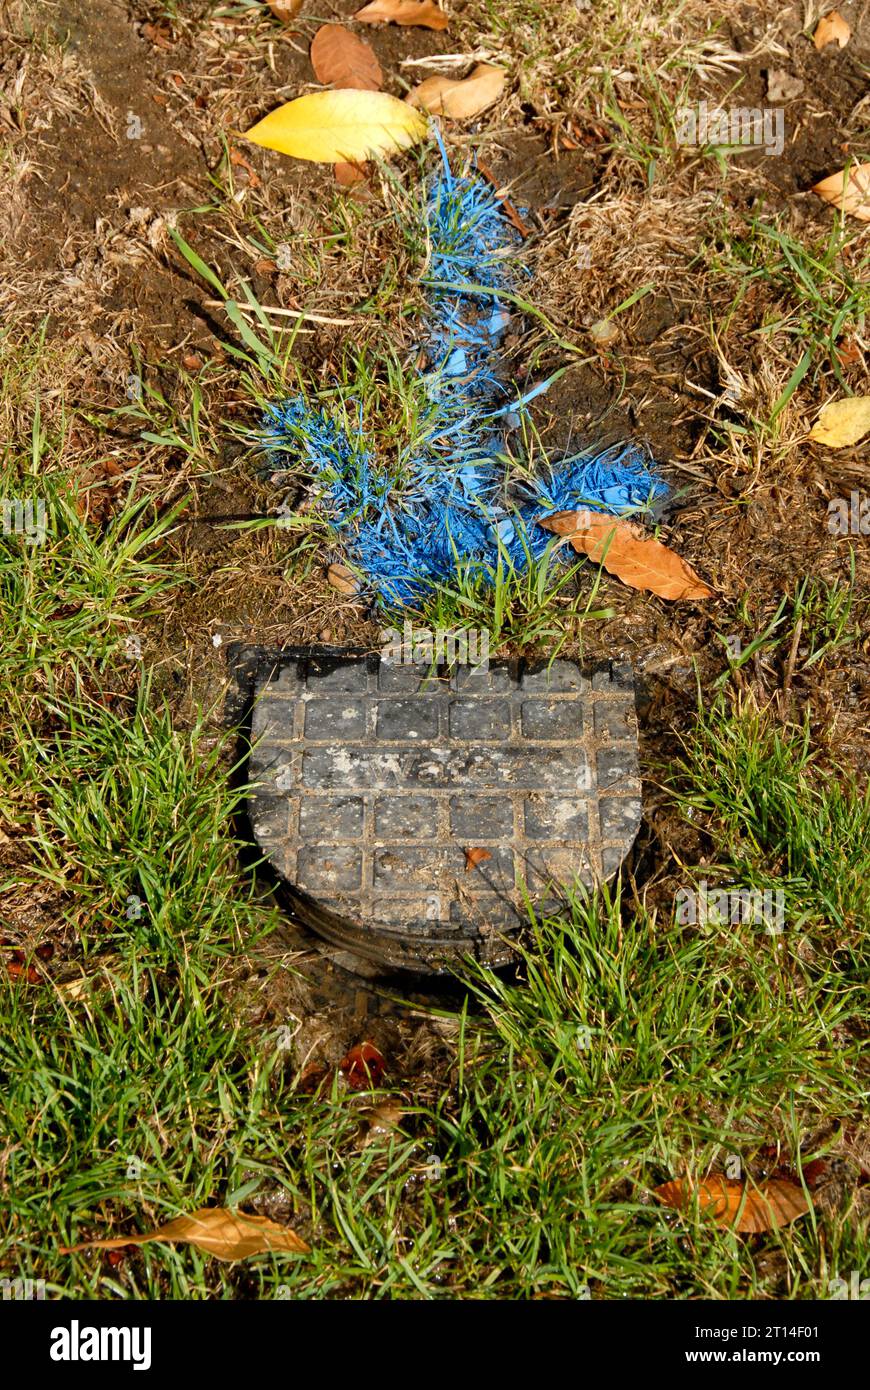 Freccia blu in grassetto sull'erba che indica perdite dal misuratore dell'acqua che deve essere sostituito, dopo il controllo e prima dell'inizio delle riparazioni Foto Stock